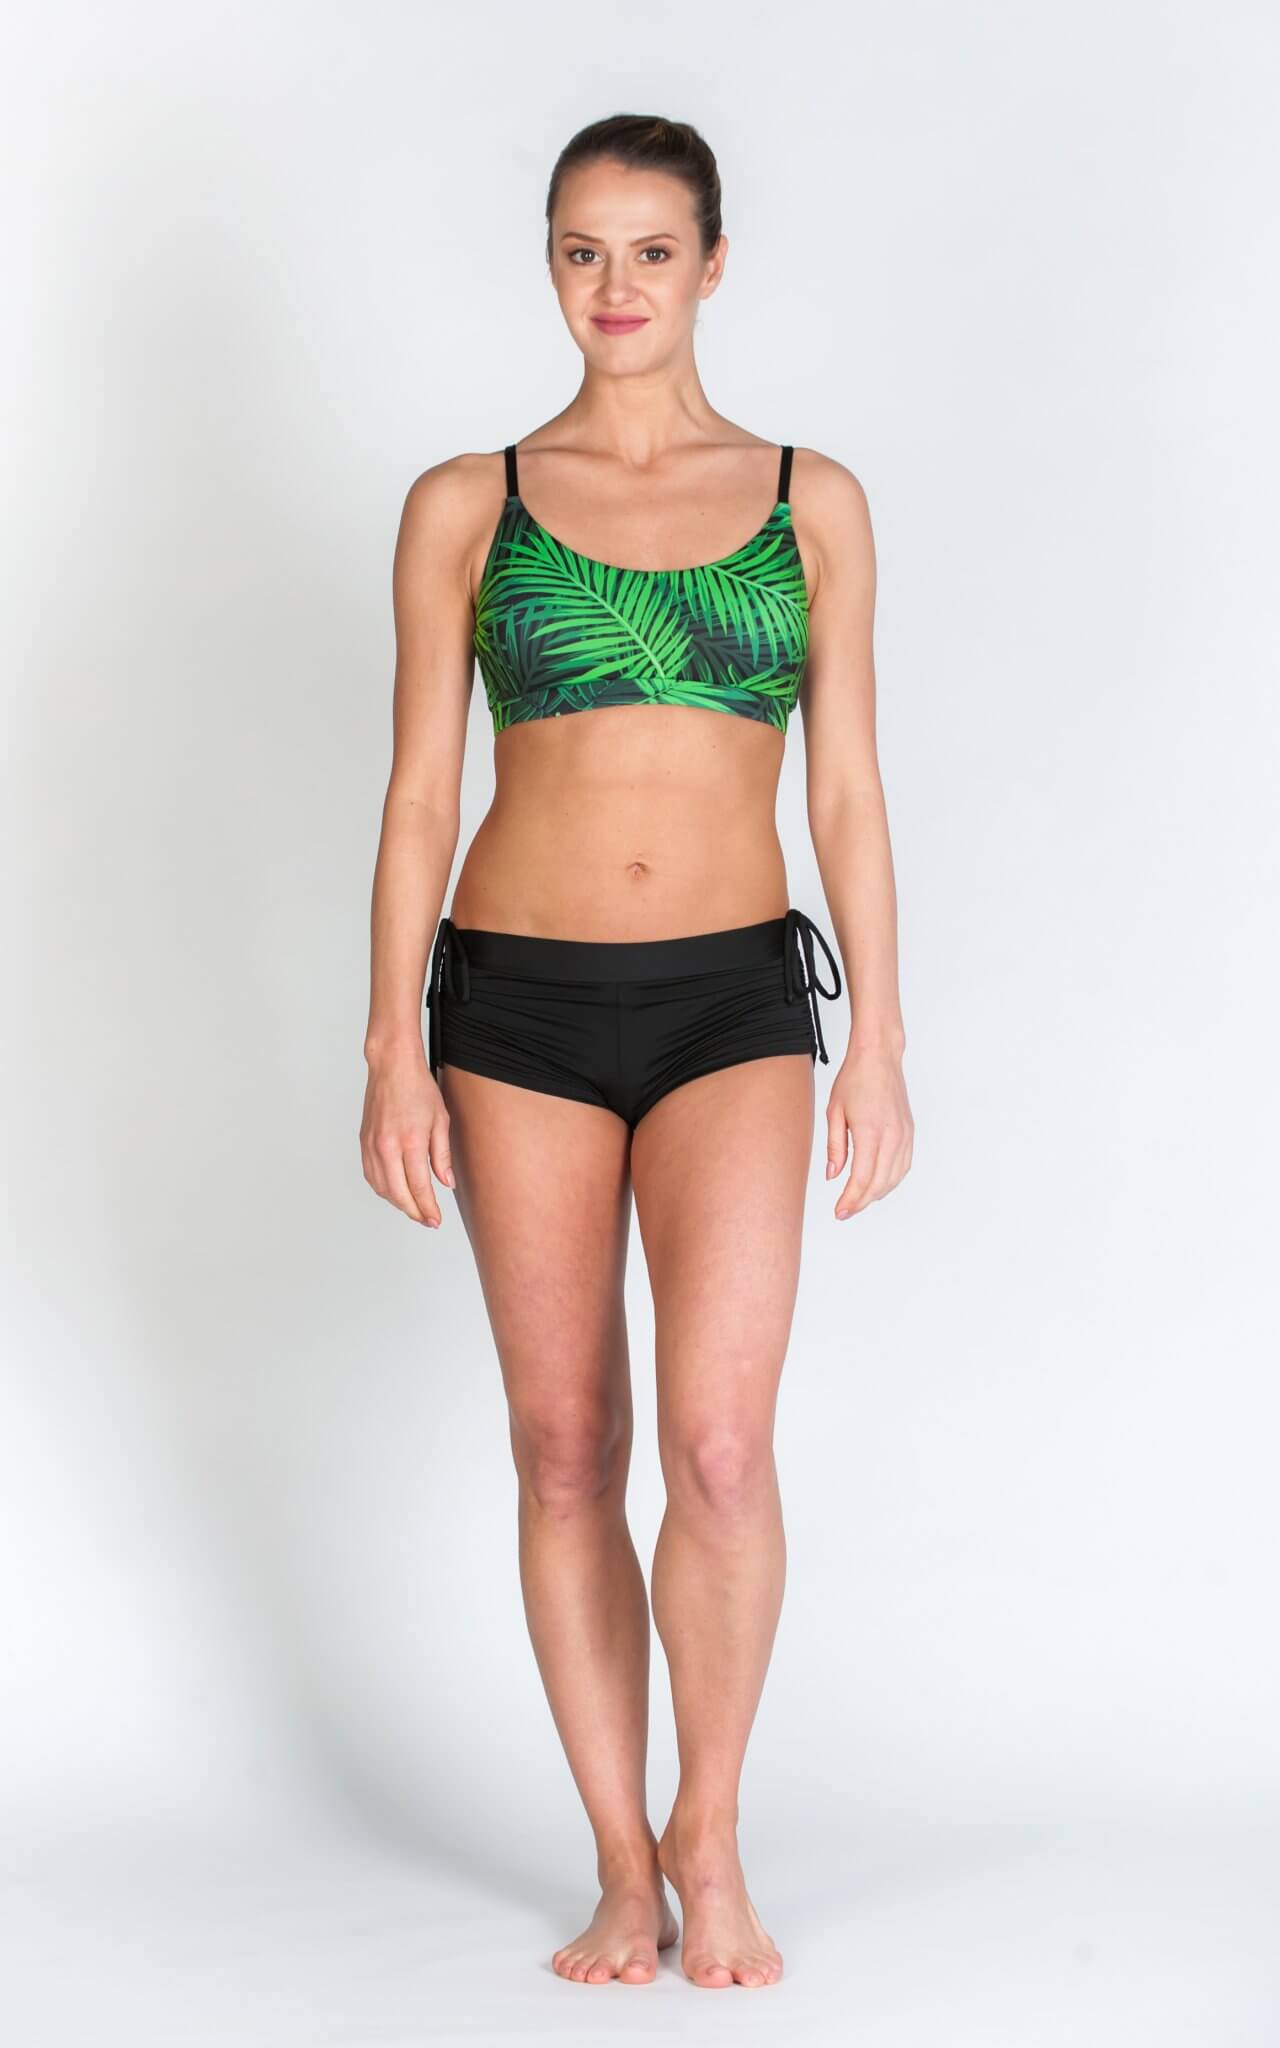 Boudoir sportmelltartó leaf - fitness ruházat, jógafelszerelés, női ruha rendelés - webáruház, webshop